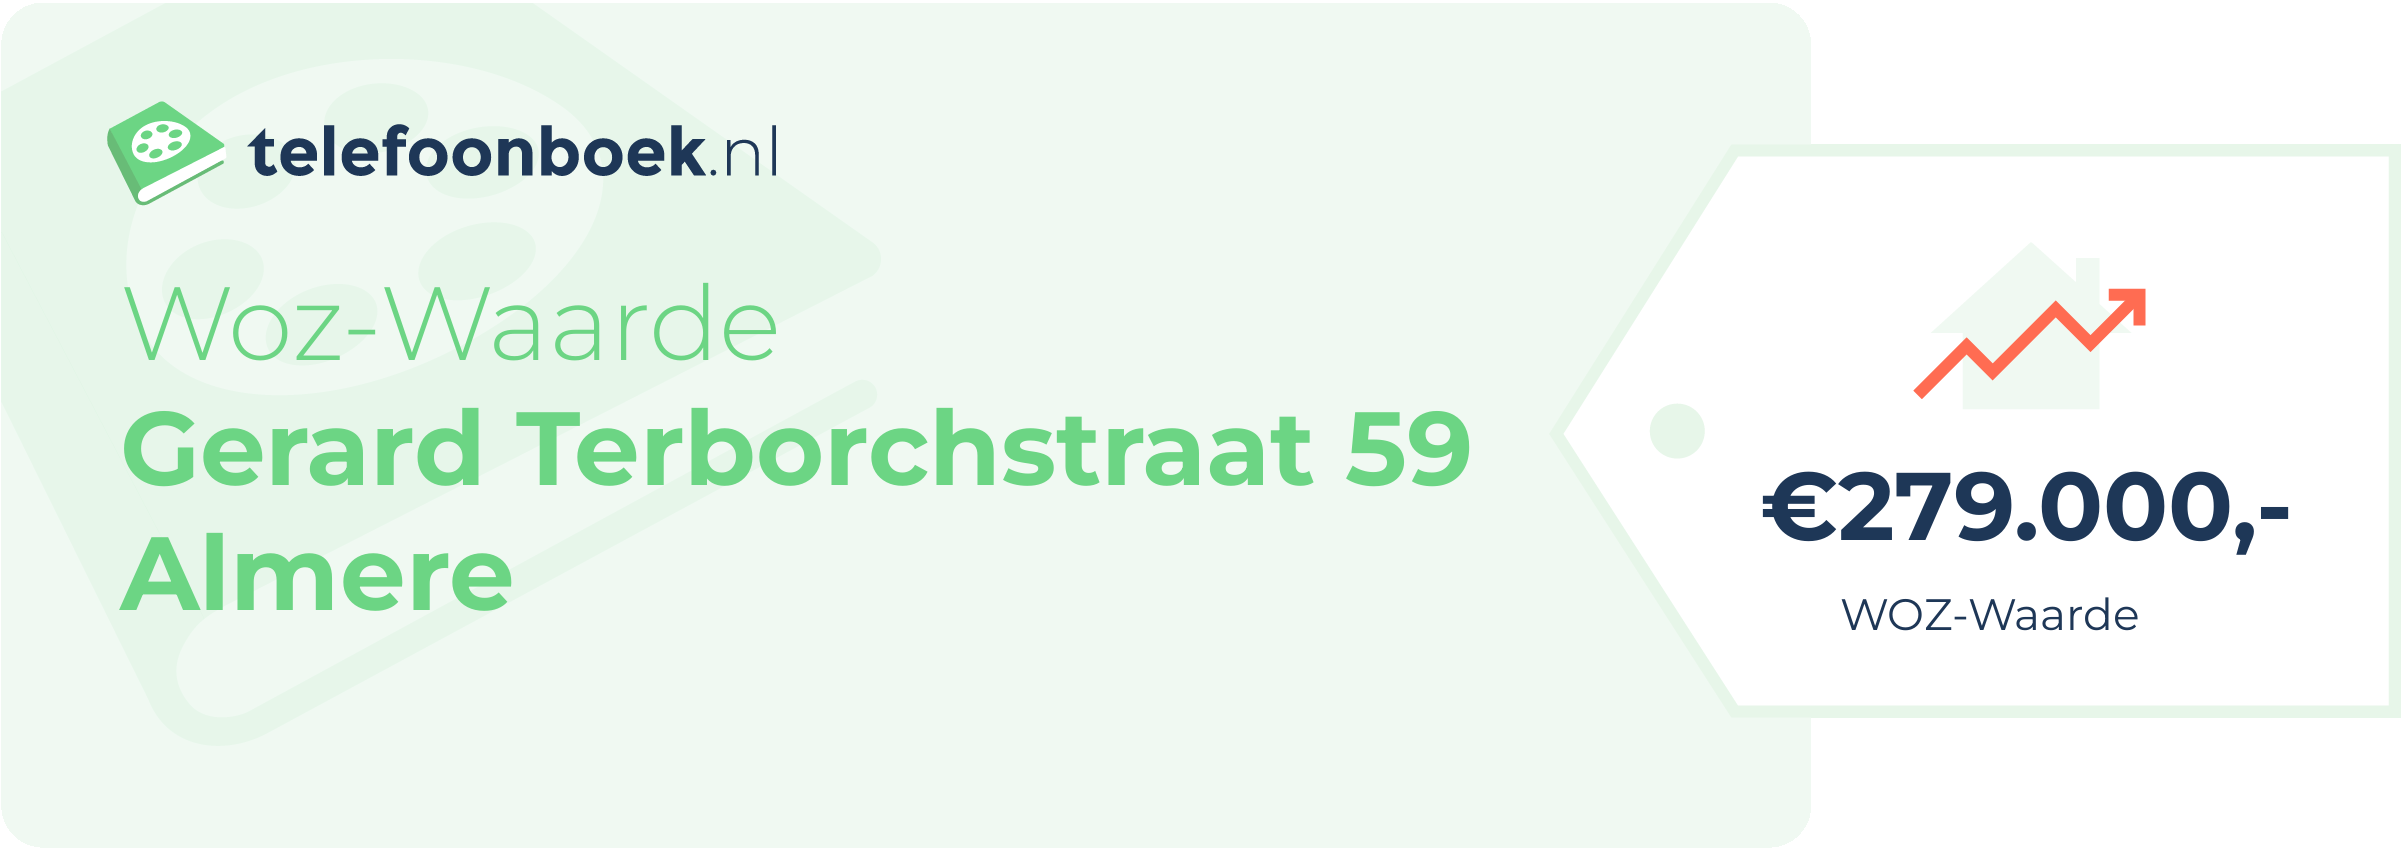 WOZ-waarde Gerard Terborchstraat 59 Almere